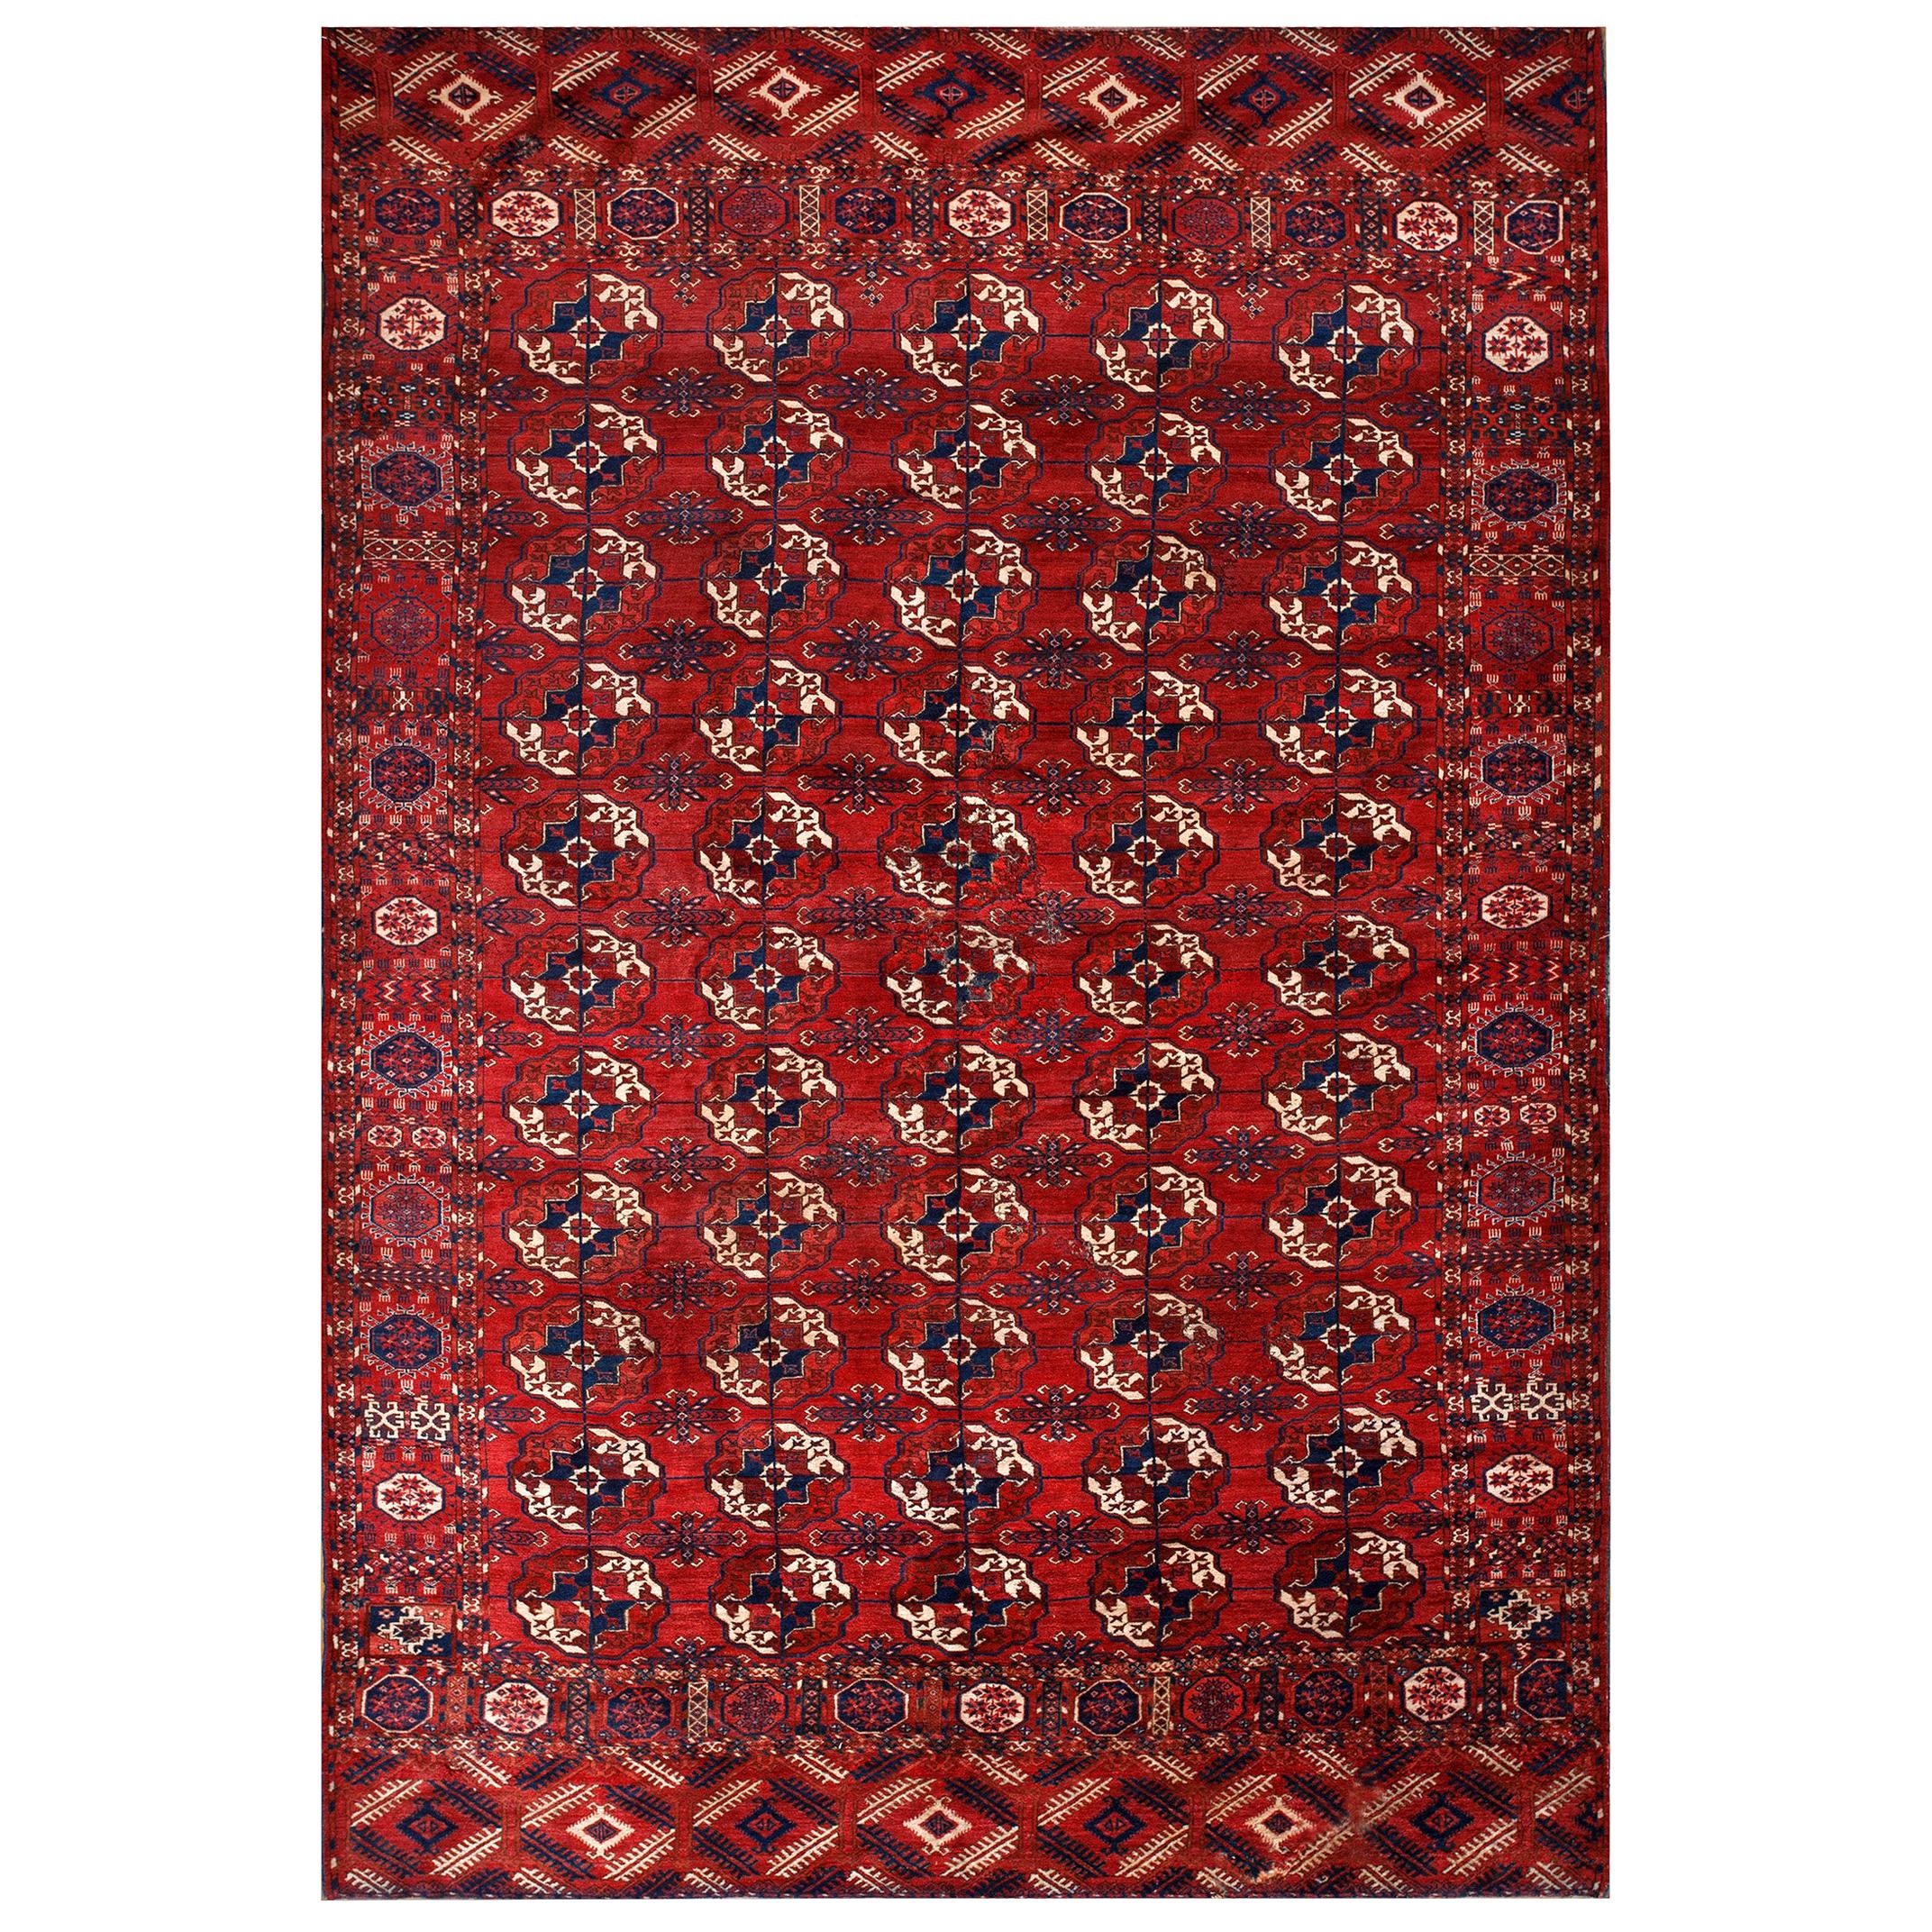 19th Century Russian Tekke Turkmen Carpet  ( 7' x 10'6" - 213 x 320 )